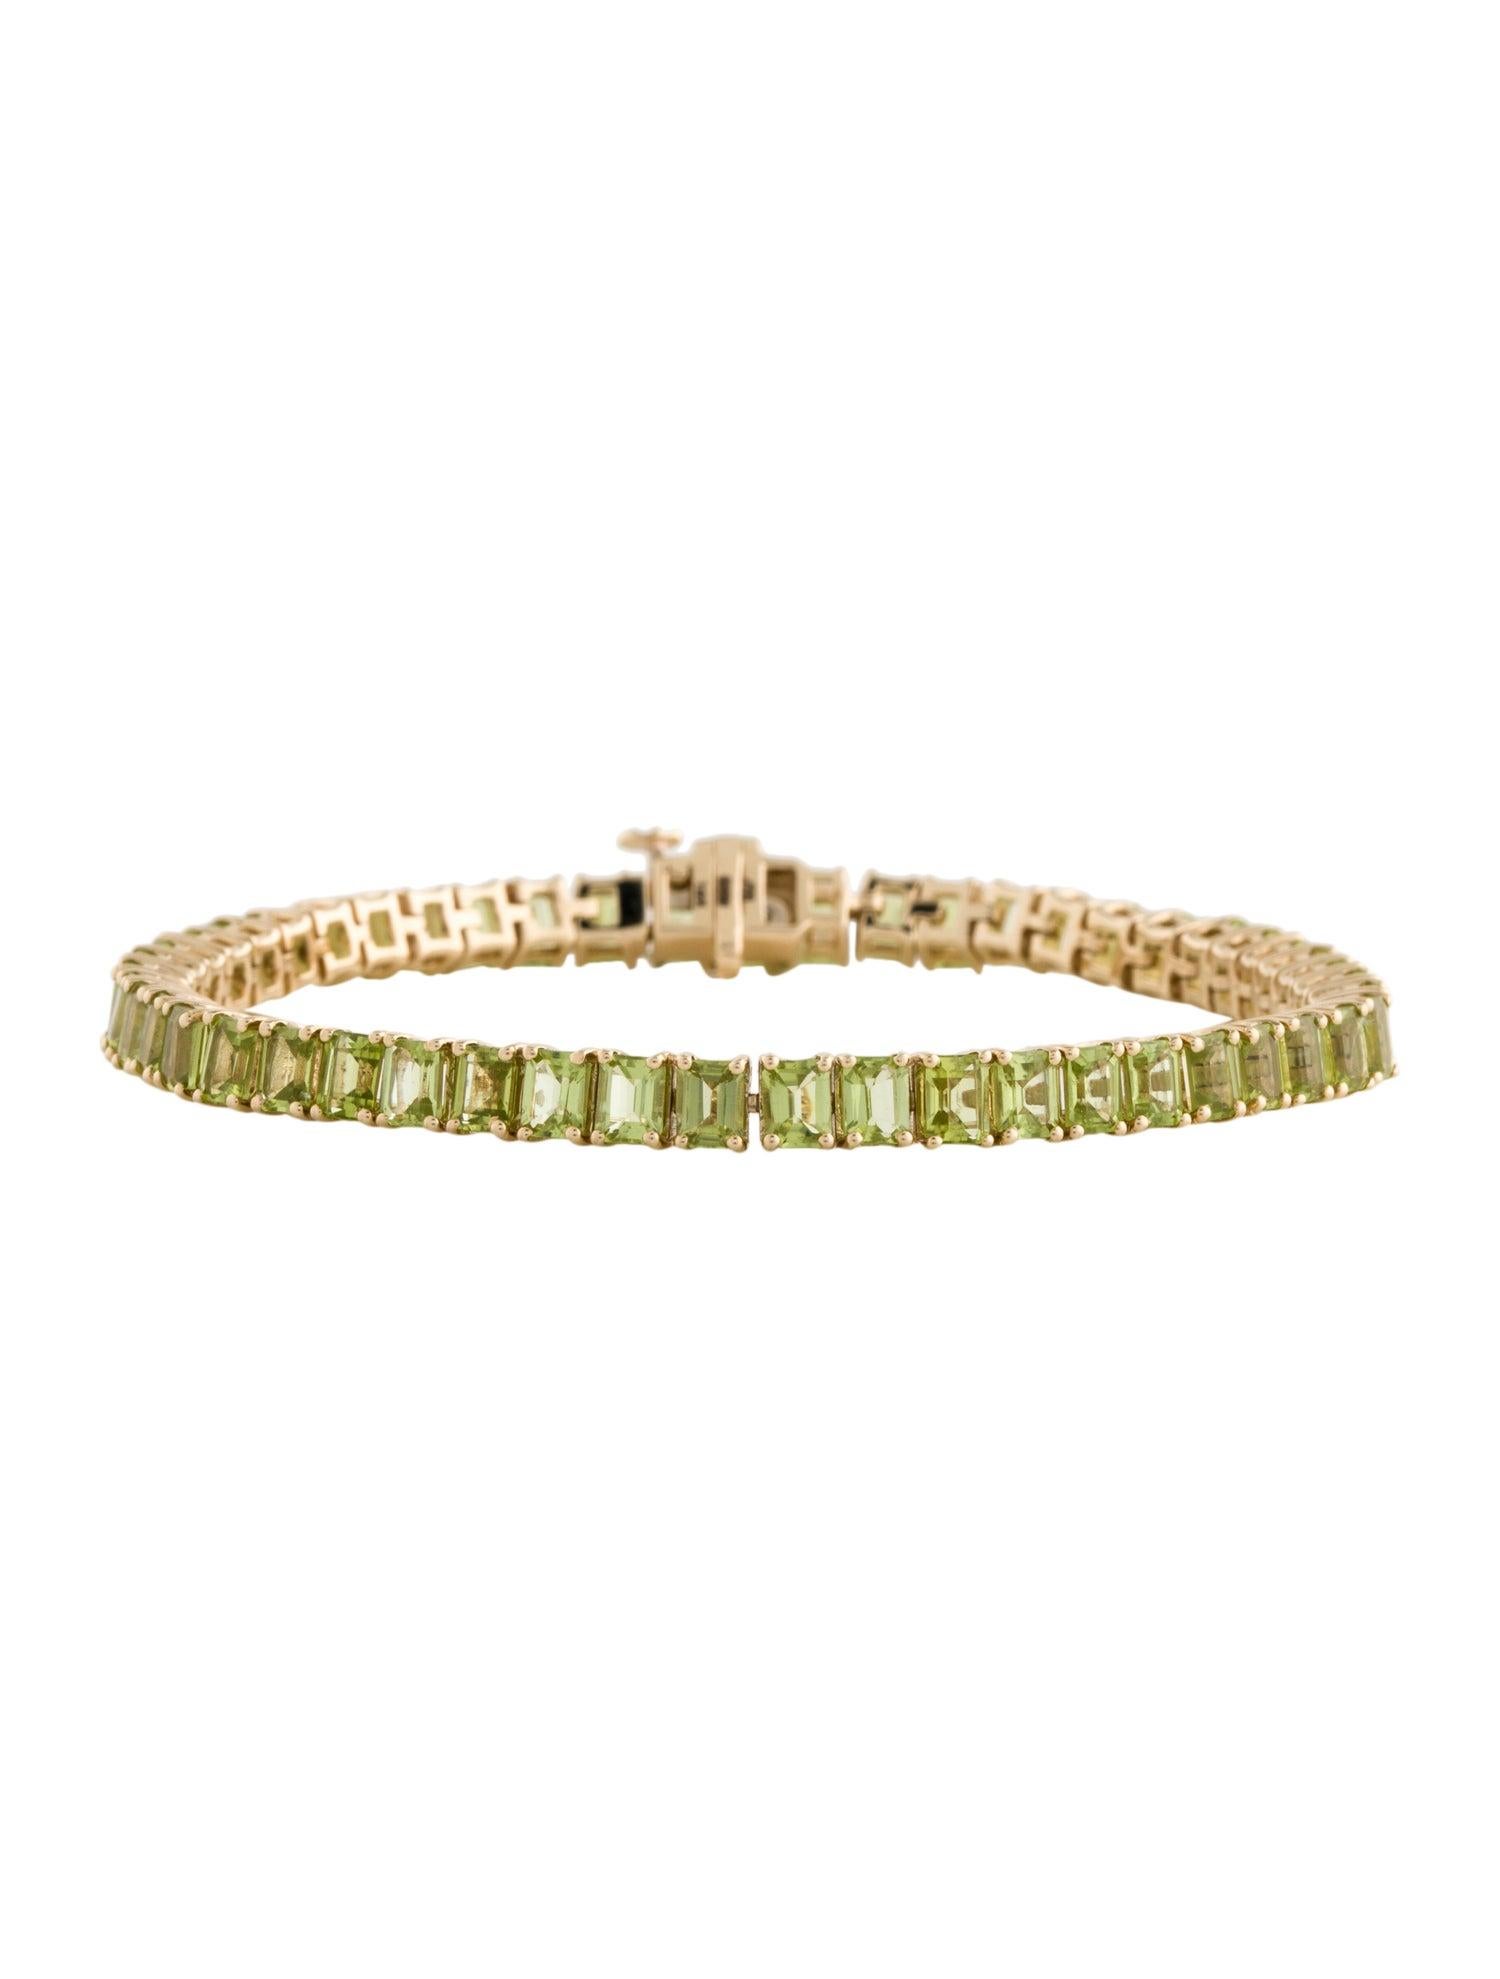 Élevez votre style avec notre exquis bracelet Harmony in Green Peridot, un chef-d'œuvre de la collection estimée de Jeweltique. Fabriqué avec précision et passion, ce bracelet incarne les qualités apaisantes et rafraîchissantes de la pierre péridot,